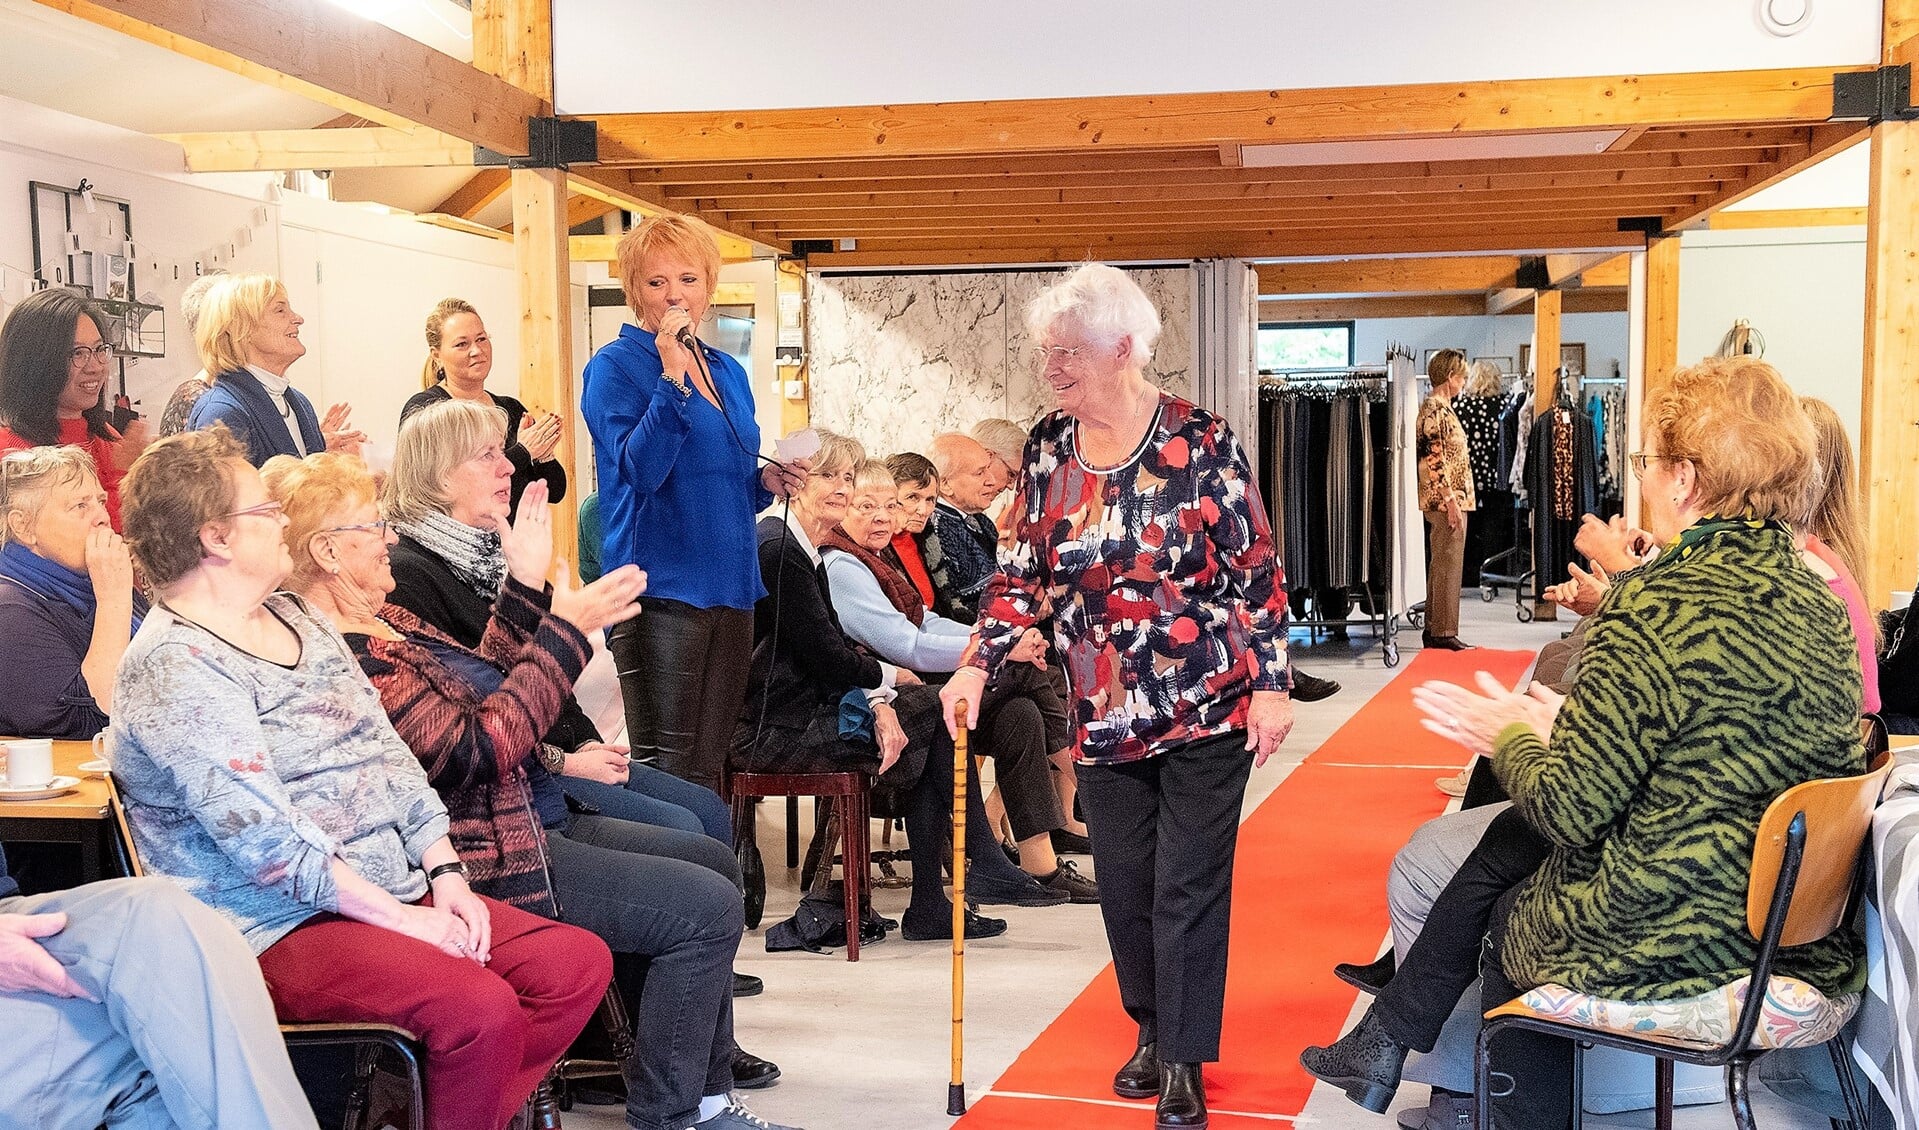 Er werd verwachtingsvol uitgekeken werd naar de mannequins: zes deelnemers aan de Koffieochtend tussen de 70 en 93 jaar die op hun eigen wijze op de muziek over de rode loper liepen (foto: Michel Groen).